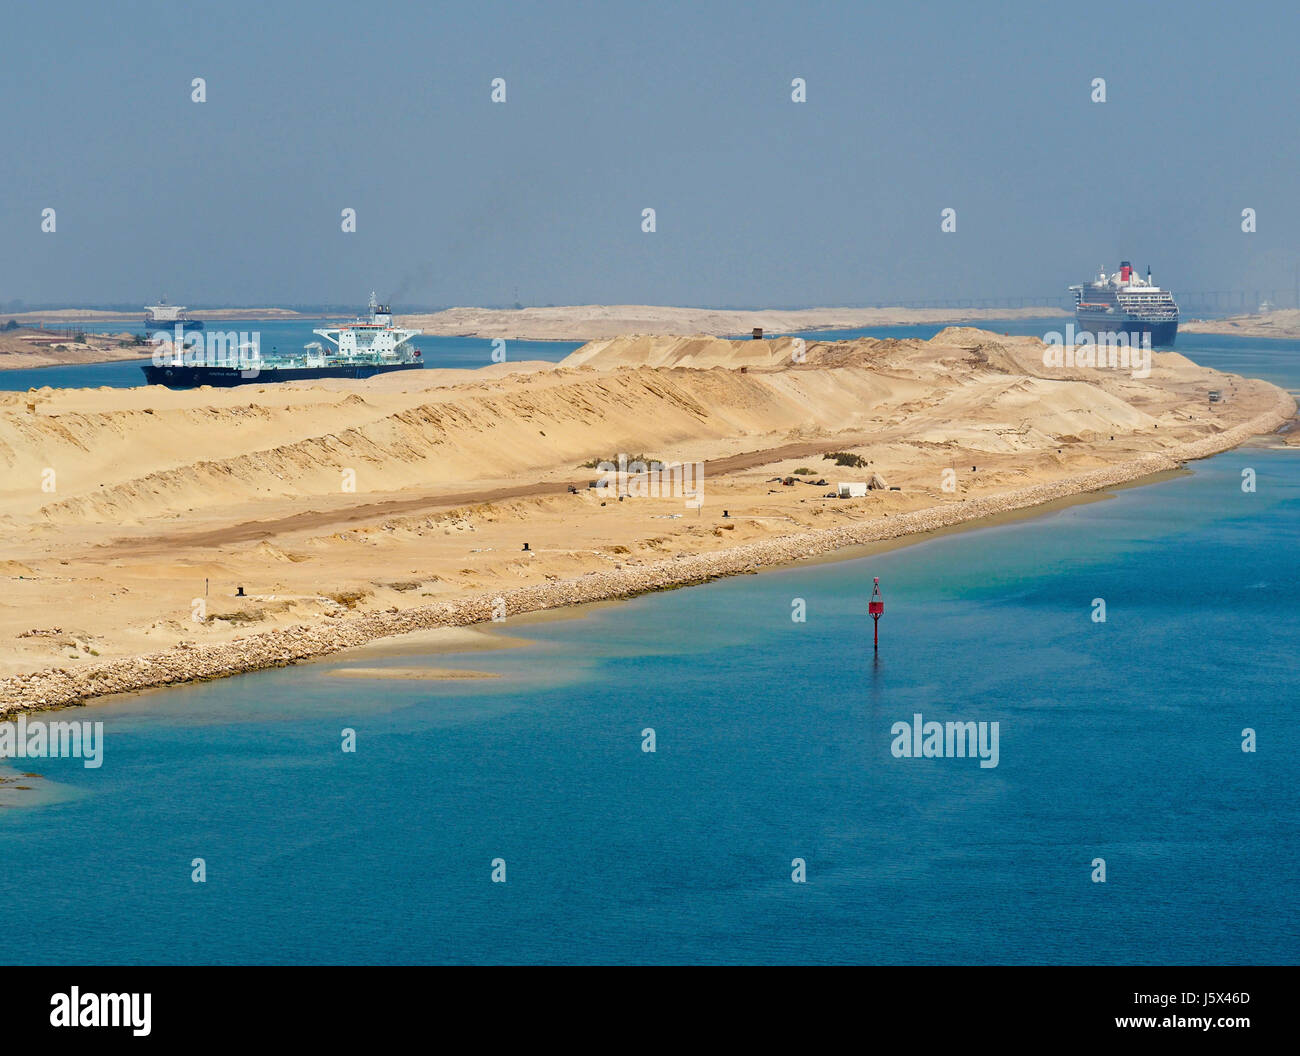 Nouvelle section du canal de Suez avec deux moyens de trafic, Queen Mary 2 en direction du nord, le canal de droite et des pétroliers en direction sud à gauche. Banque D'Images